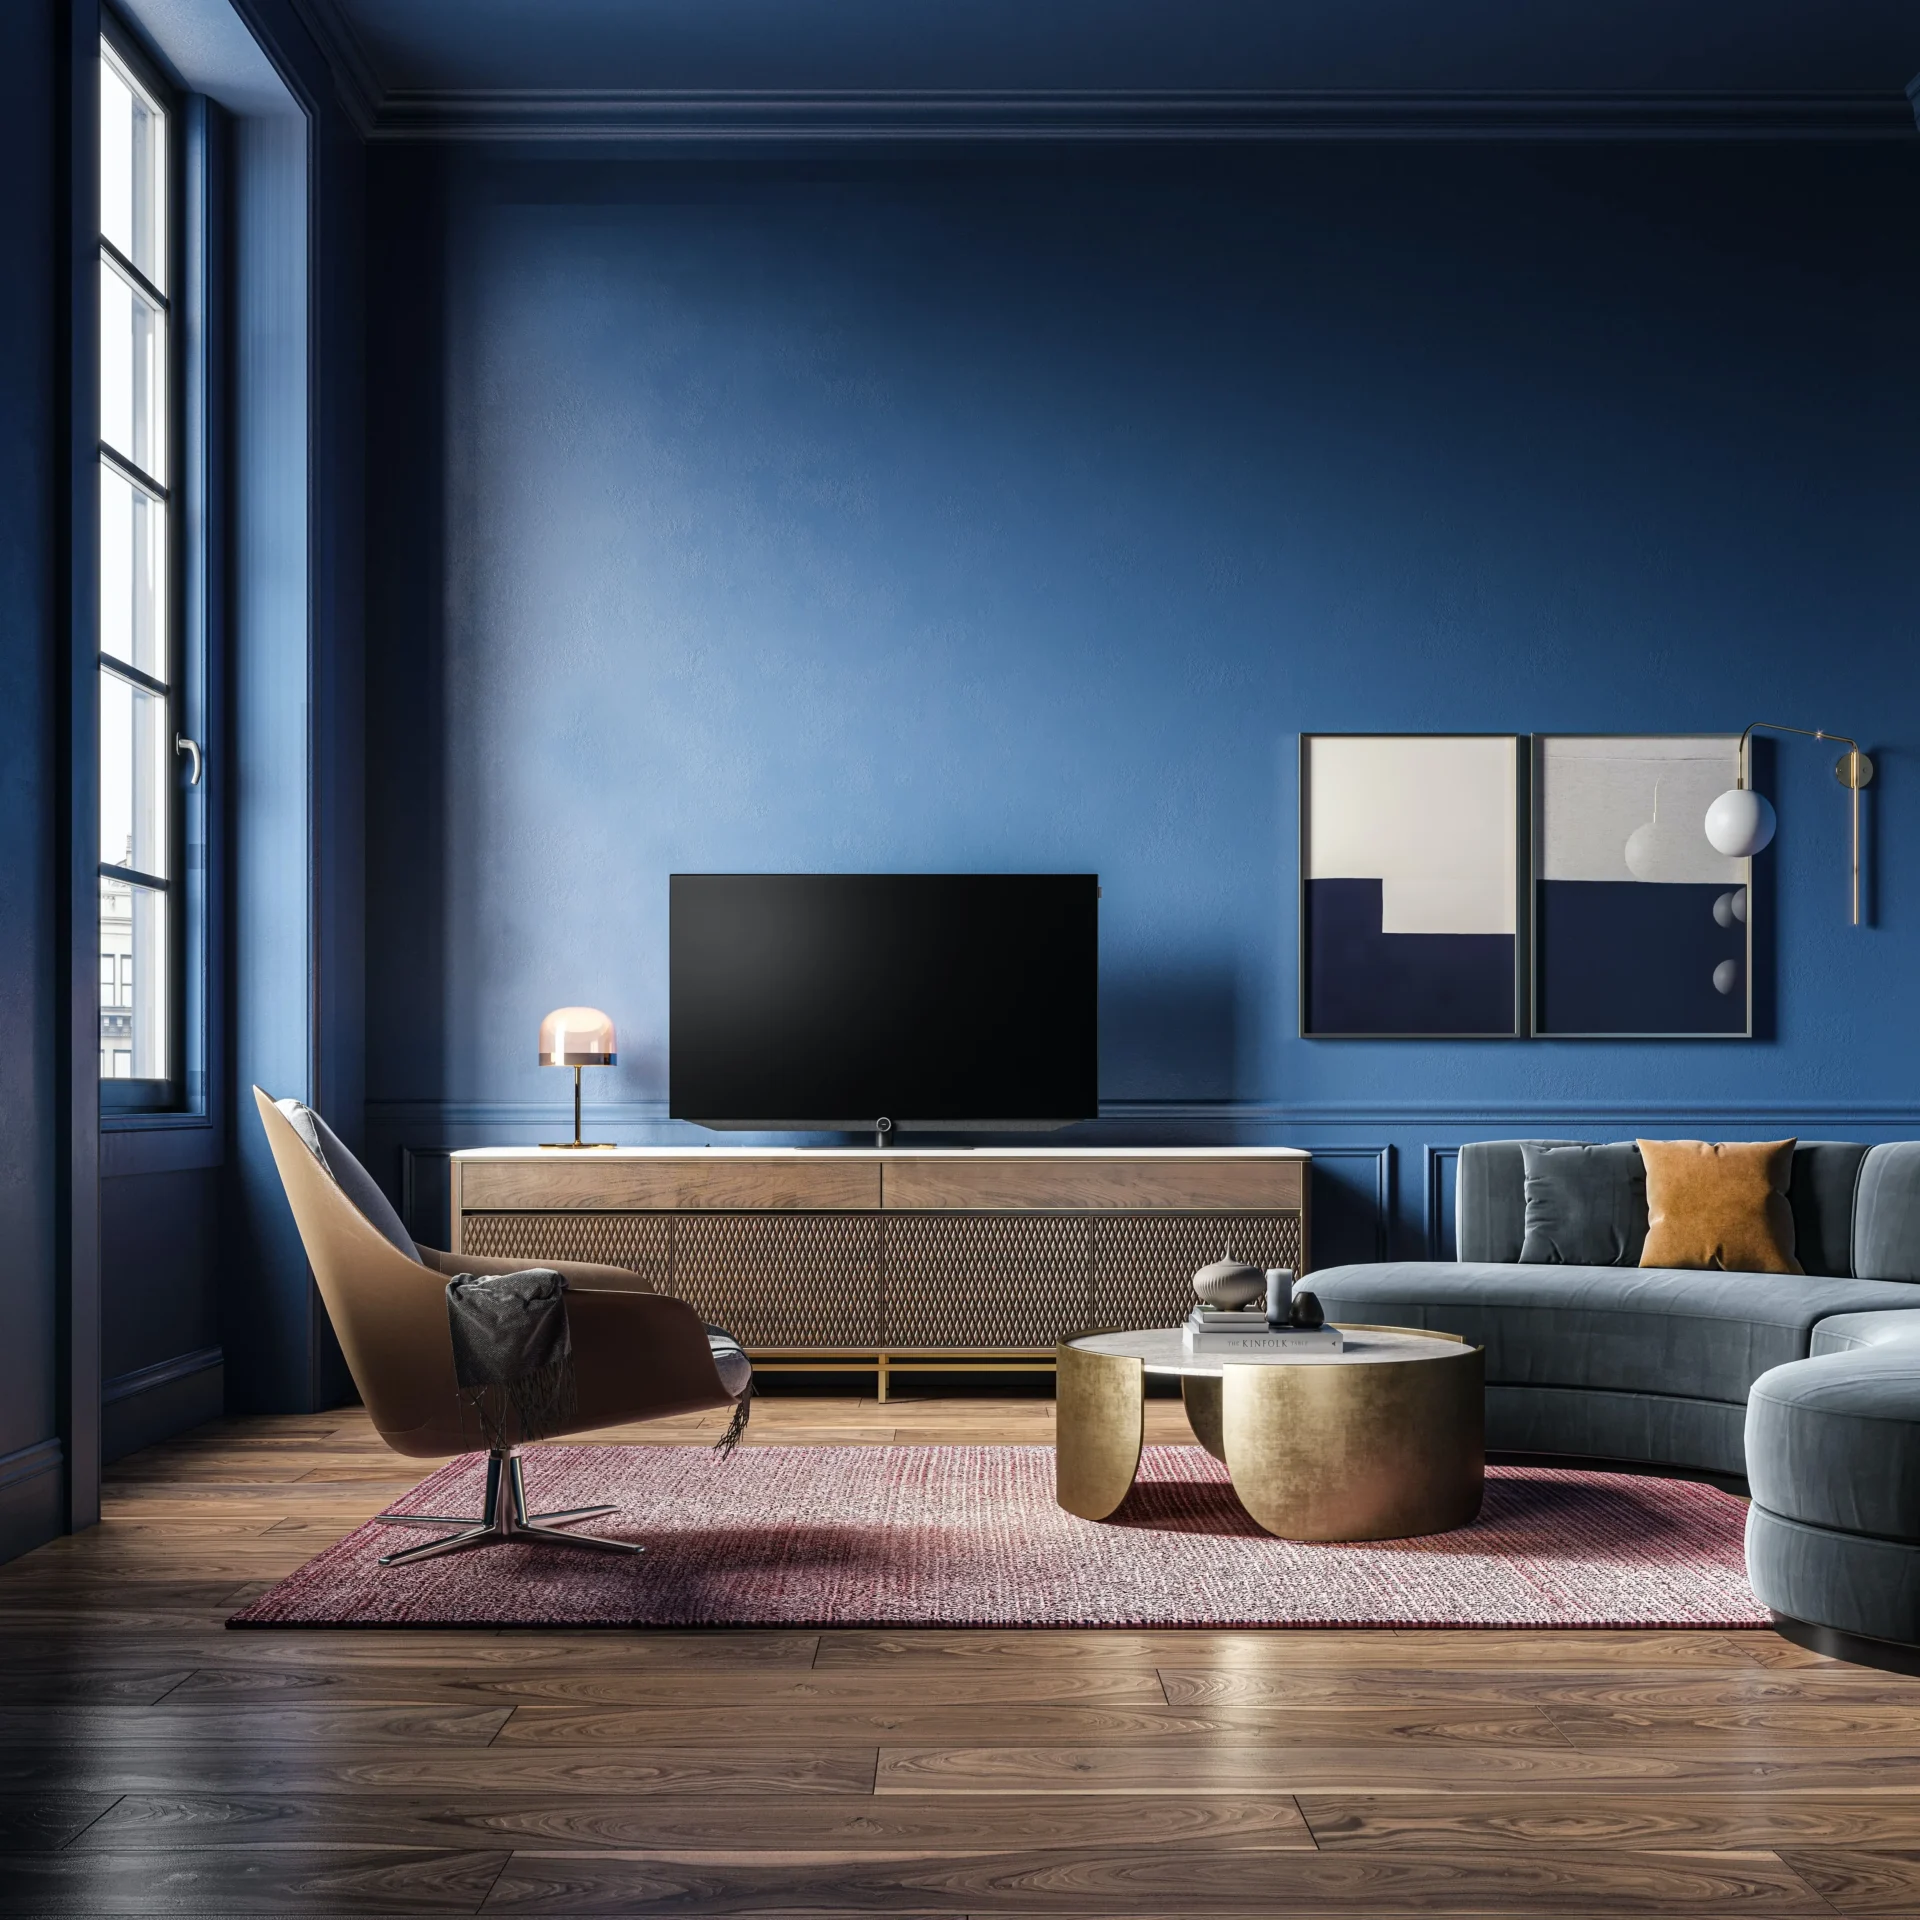 Mueble de salón - 8 ideas para crear tu mueble de TV perfecto - Fabrilisestudio.com